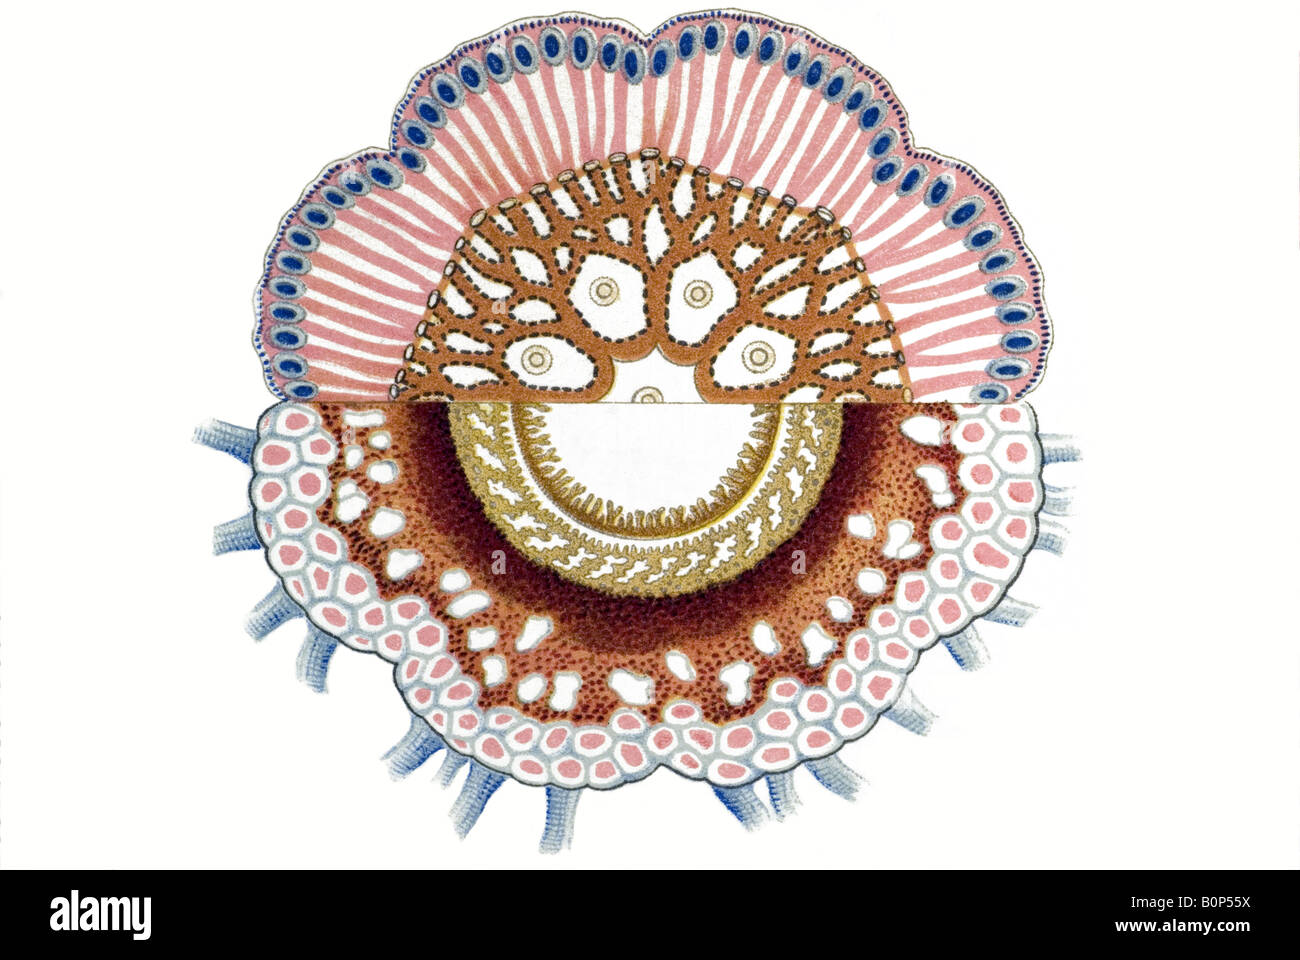 Nom Disconalia gastroblasta Siphonophorae, Haeckel, l'Europe du 20e siècle art nouveau Banque D'Images